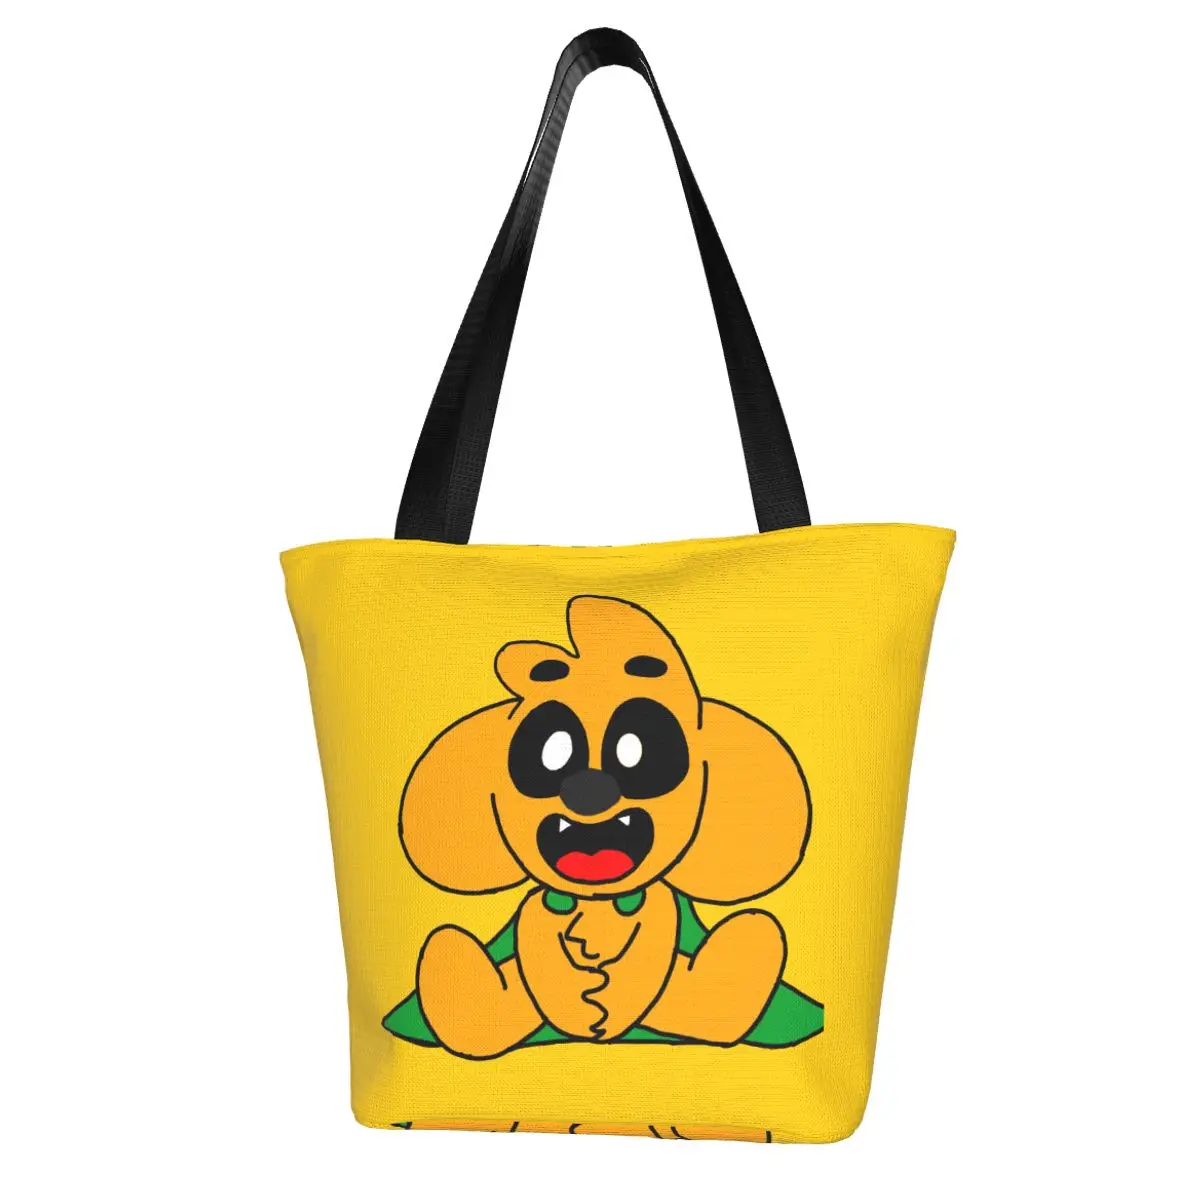 Perrito Mikecrack Polyester outdoor girl handbag, woman shopping bag, shoulder bag, canvas bag, gift bag